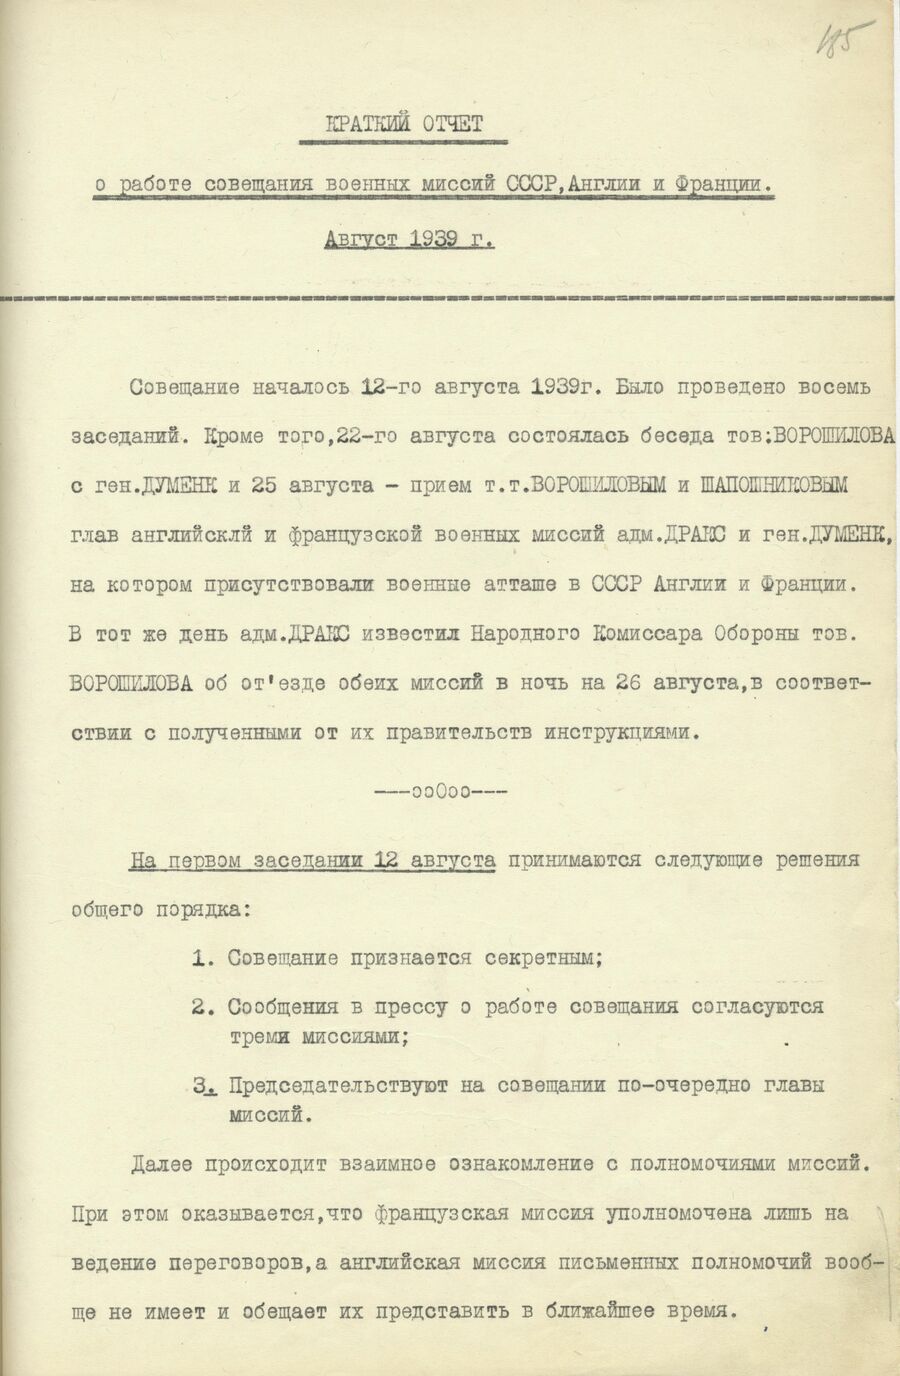 1939.08.26 Отчет о работе совещания. Лист 1